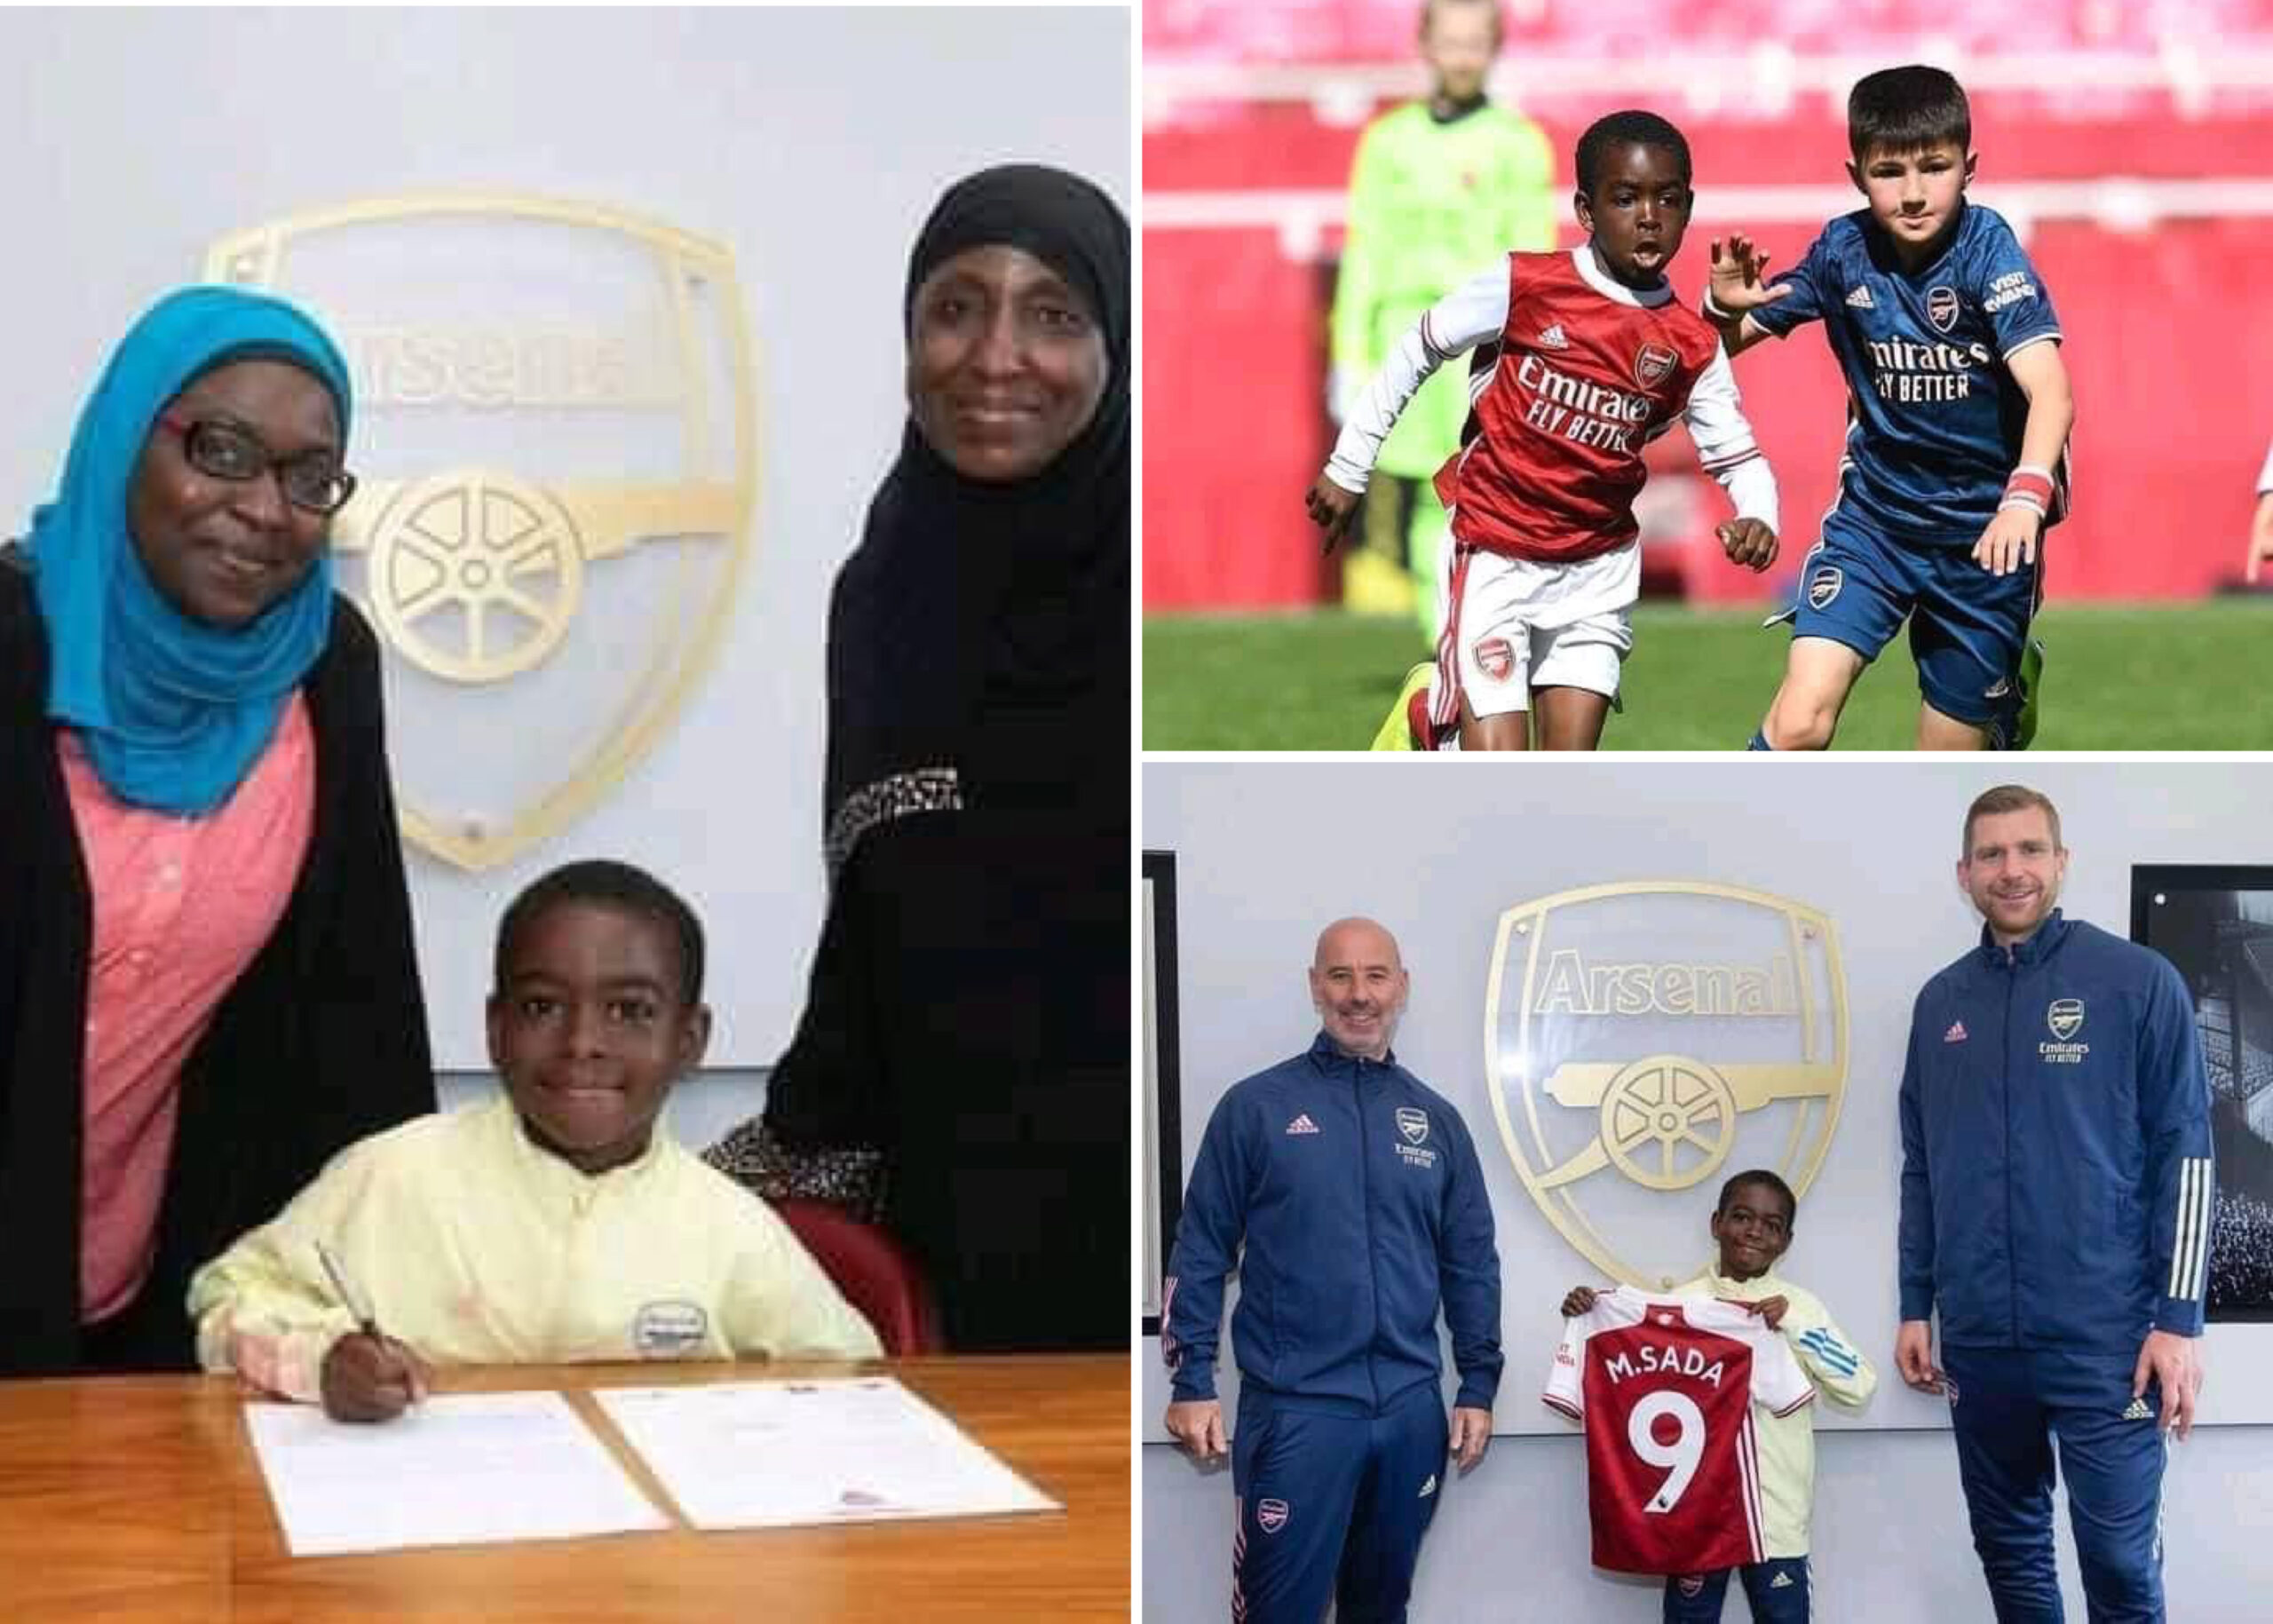 Arsenal Sign 9-Year-Old Boy From Zaria, Kaduna